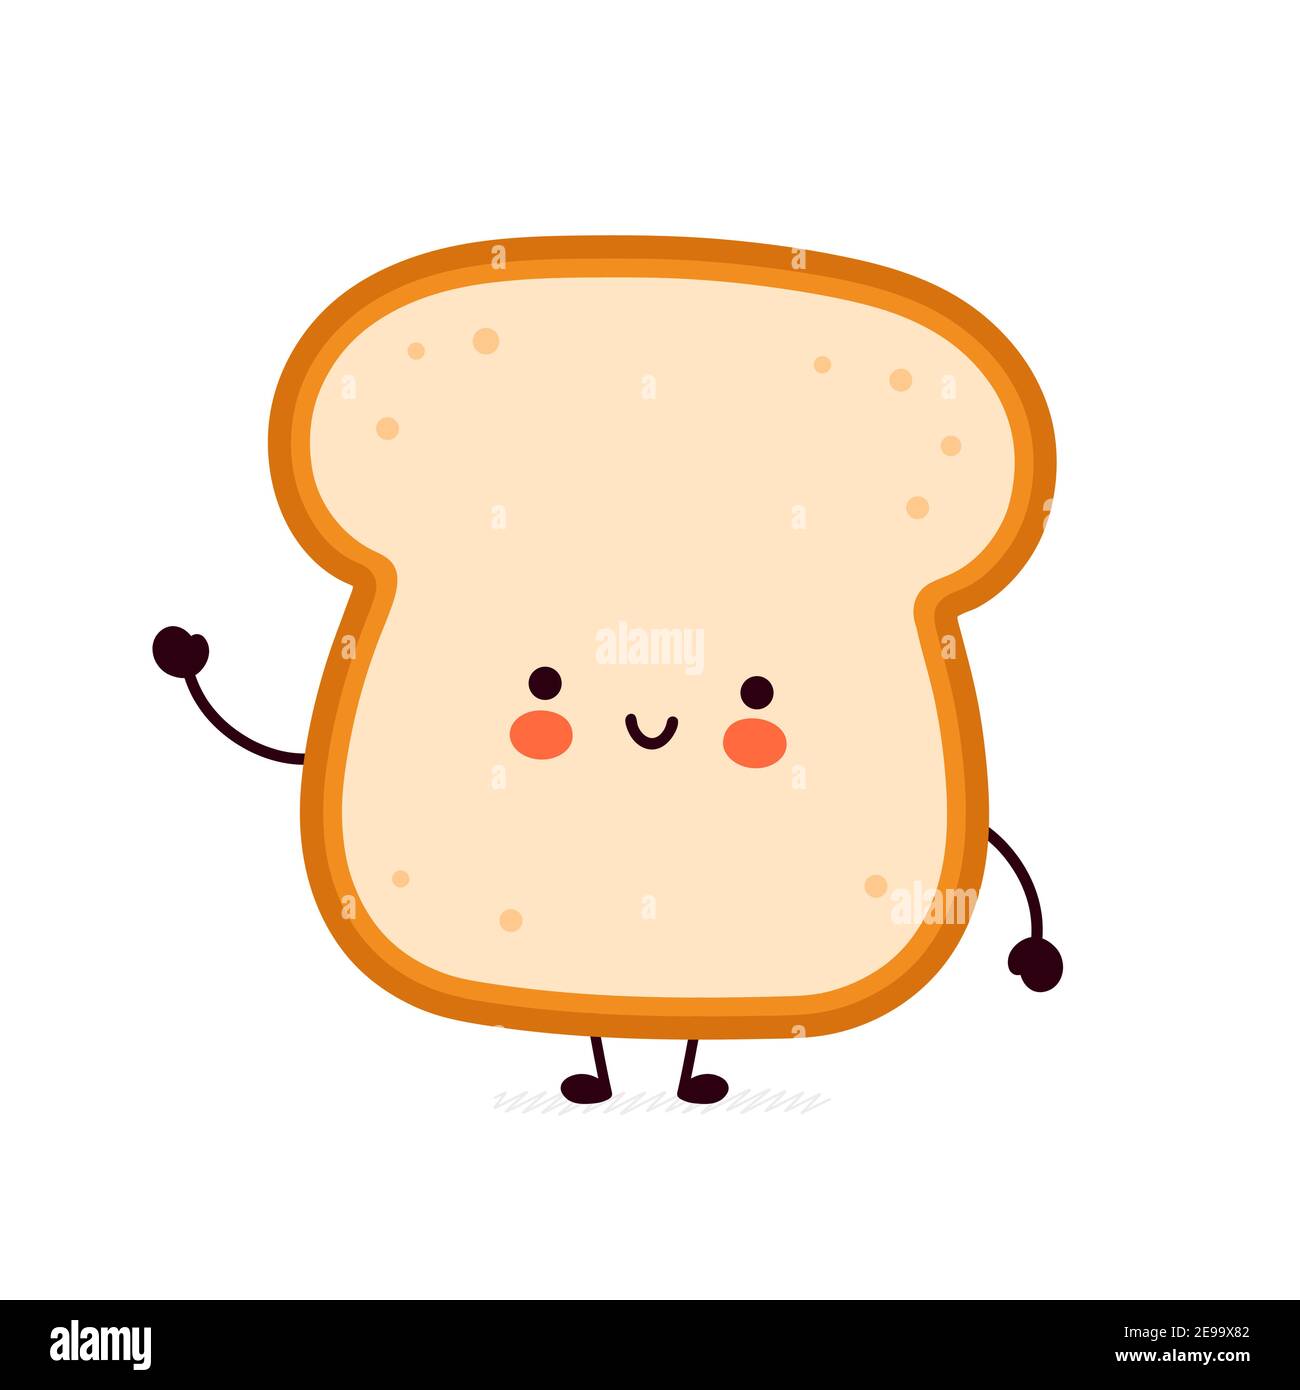 Nette lustige Brot Toast Charakter. Vektor flache Linie Cartoon kawaii Figur Illustration Symbol. Isoliert auf weißem Hintergrund. Toast mit Gesichtsfigur Maskottchen Konzept Stock Vektor